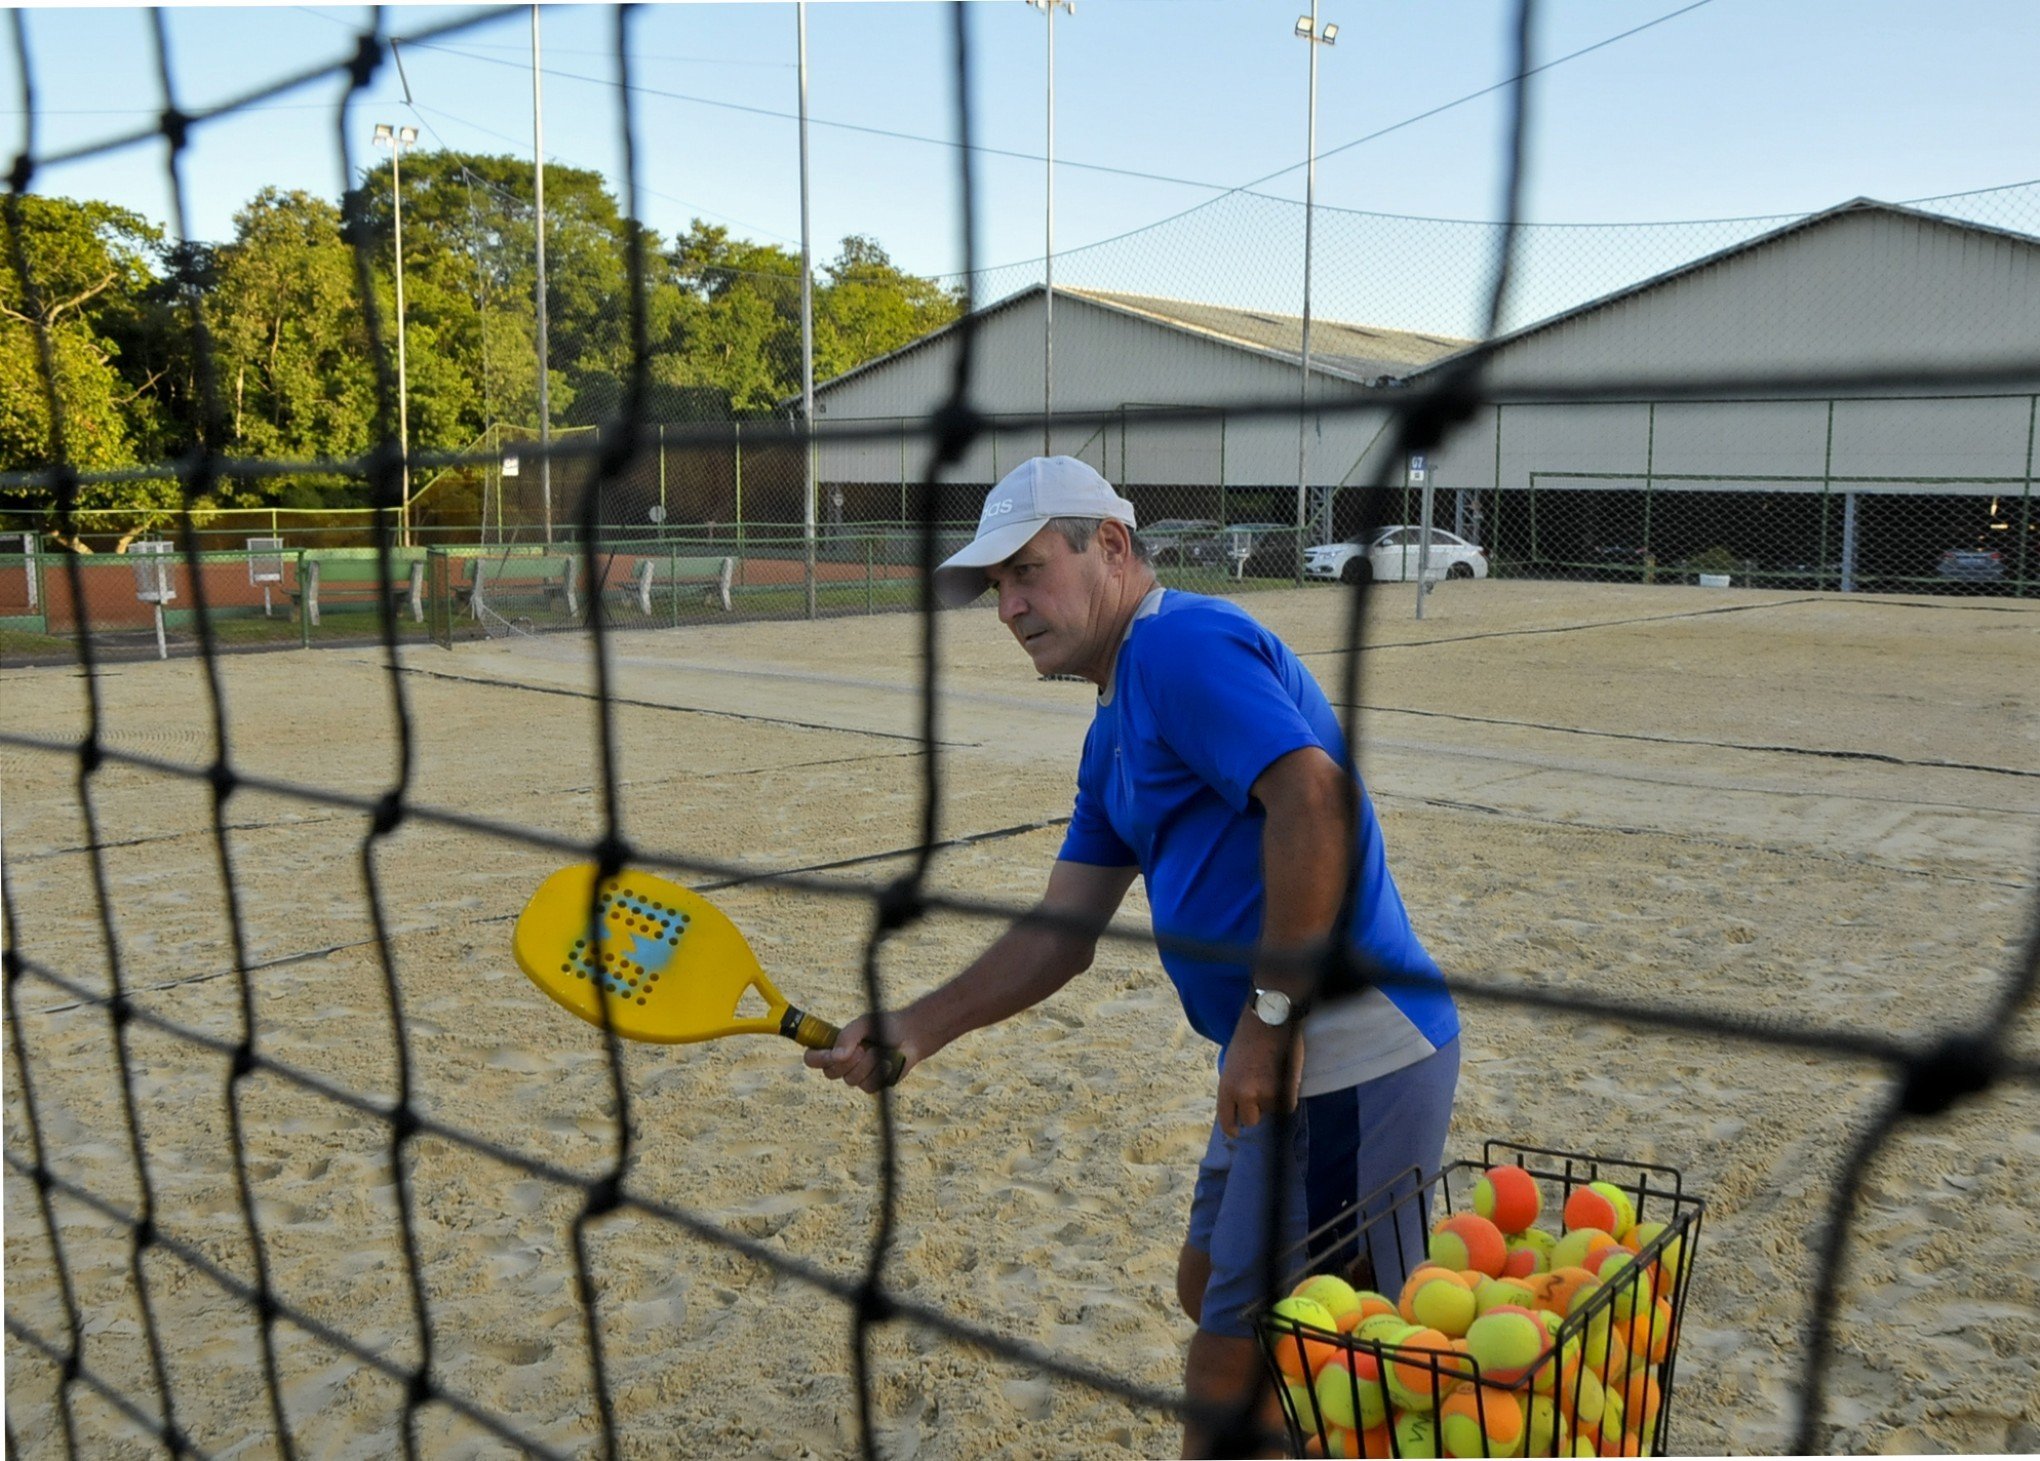 Garden terá aulas de Beach Tennis no domingo - Região - Jornal de Gramado